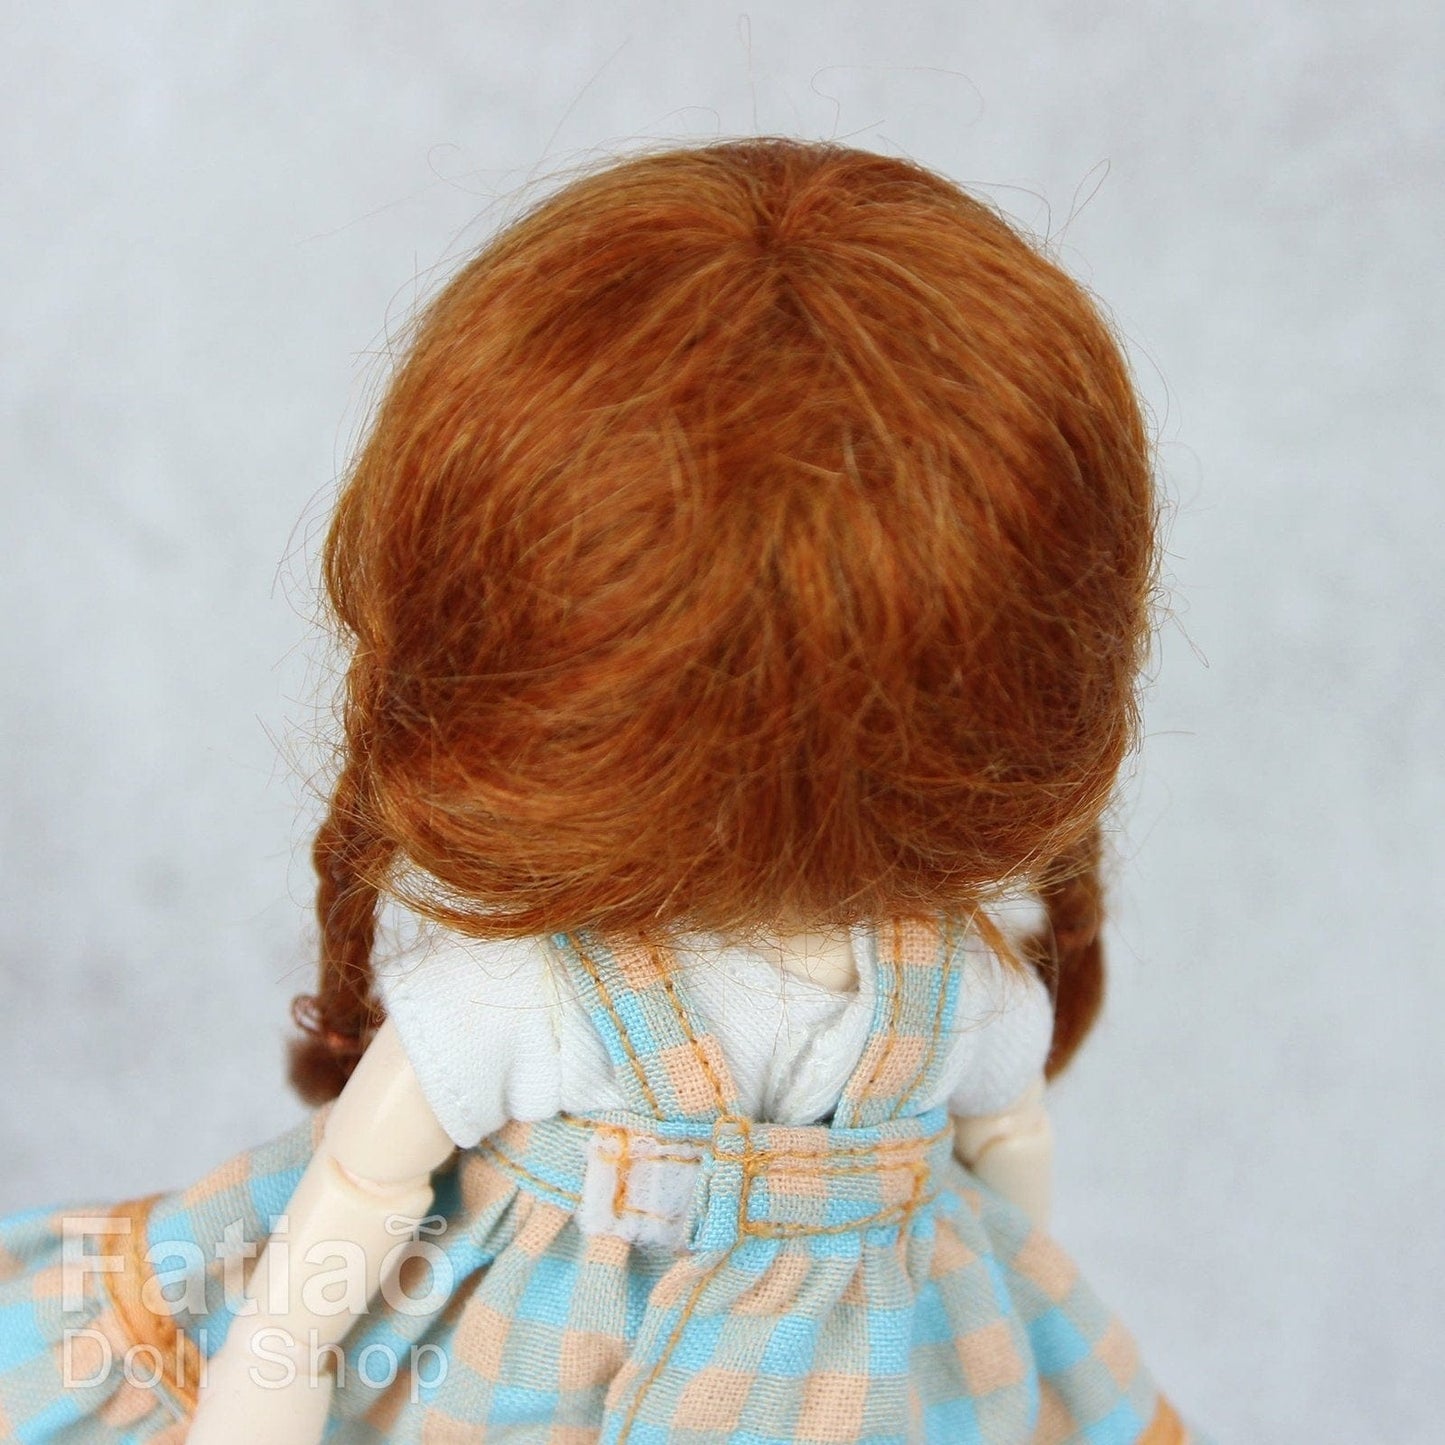 【Fatiao Doll Shop】FWF-018M 娃用假髮 多色 / 3-4吋 BJD 12分